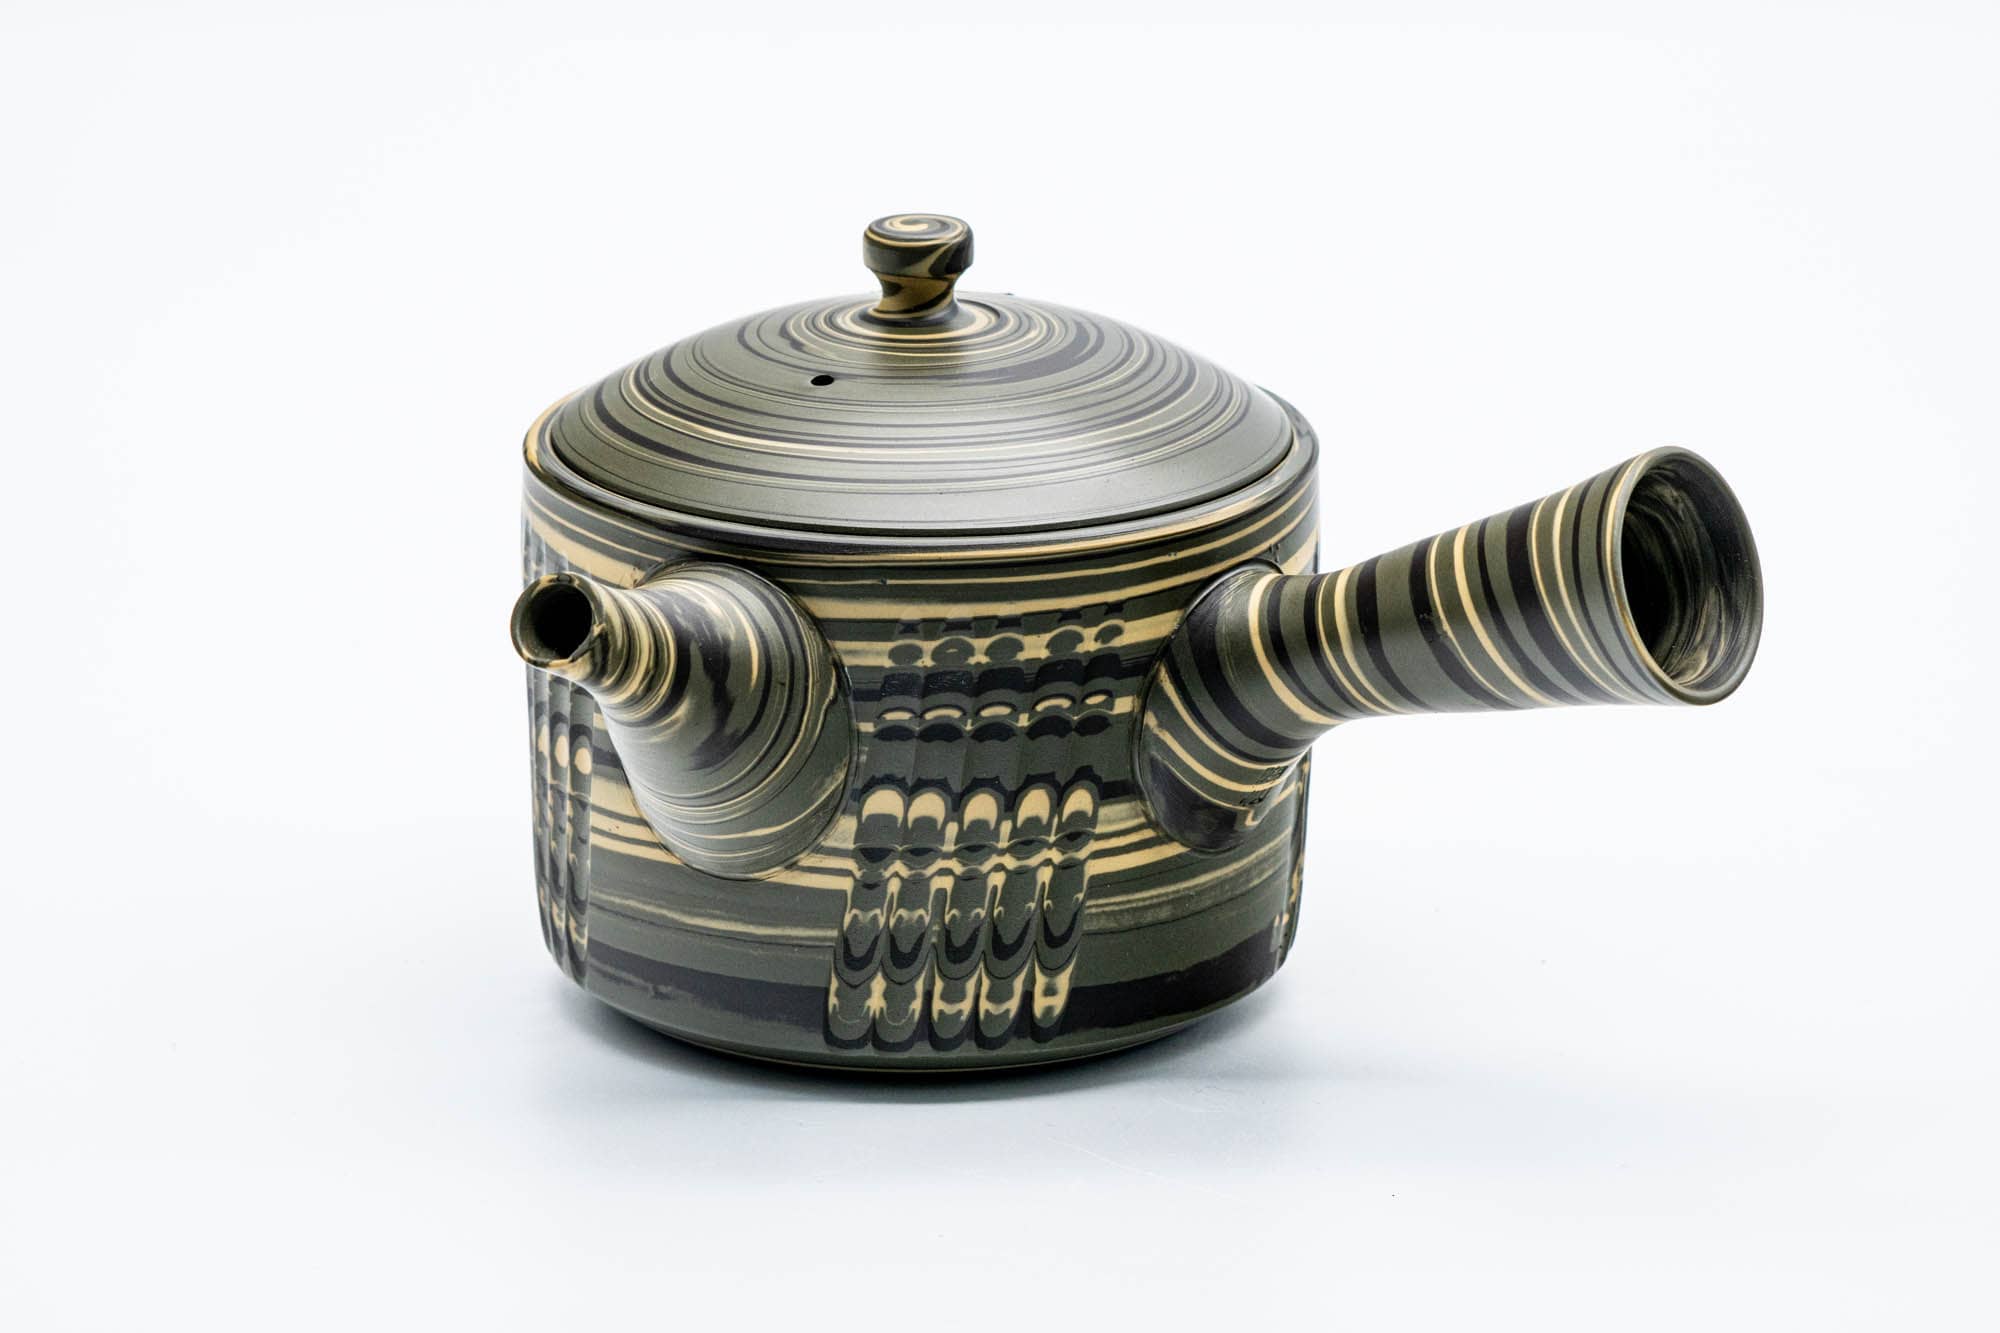 Japanese Kyusu - 陶仙窯 Tosen Kiln - Nerikomi Tokoname-yaki Ceramic Marbled Teapot - 280ml